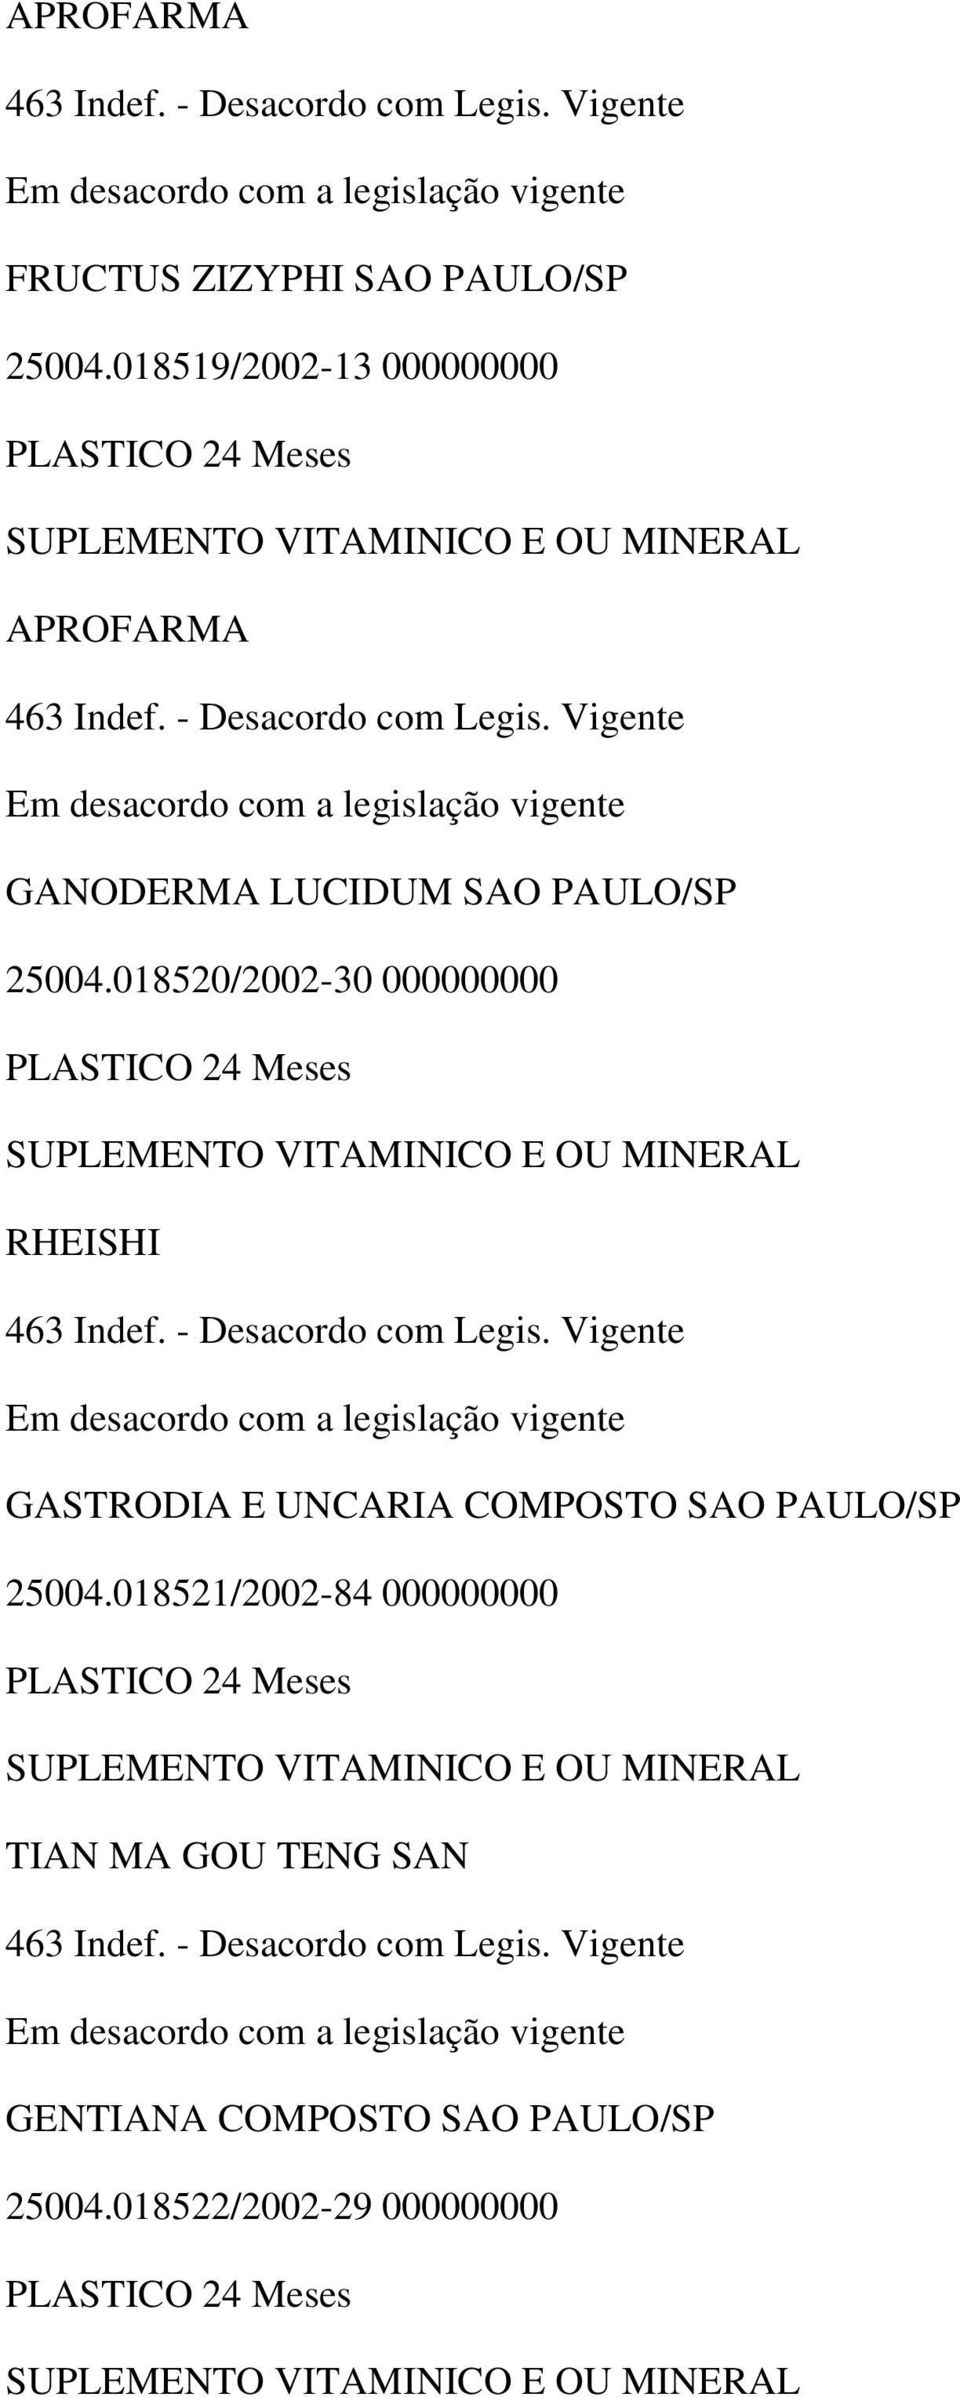 018520/2002-30 000000000 RHEISHI GASTRODIA E UNCARIA COMPOSTO SAO PAULO/SP